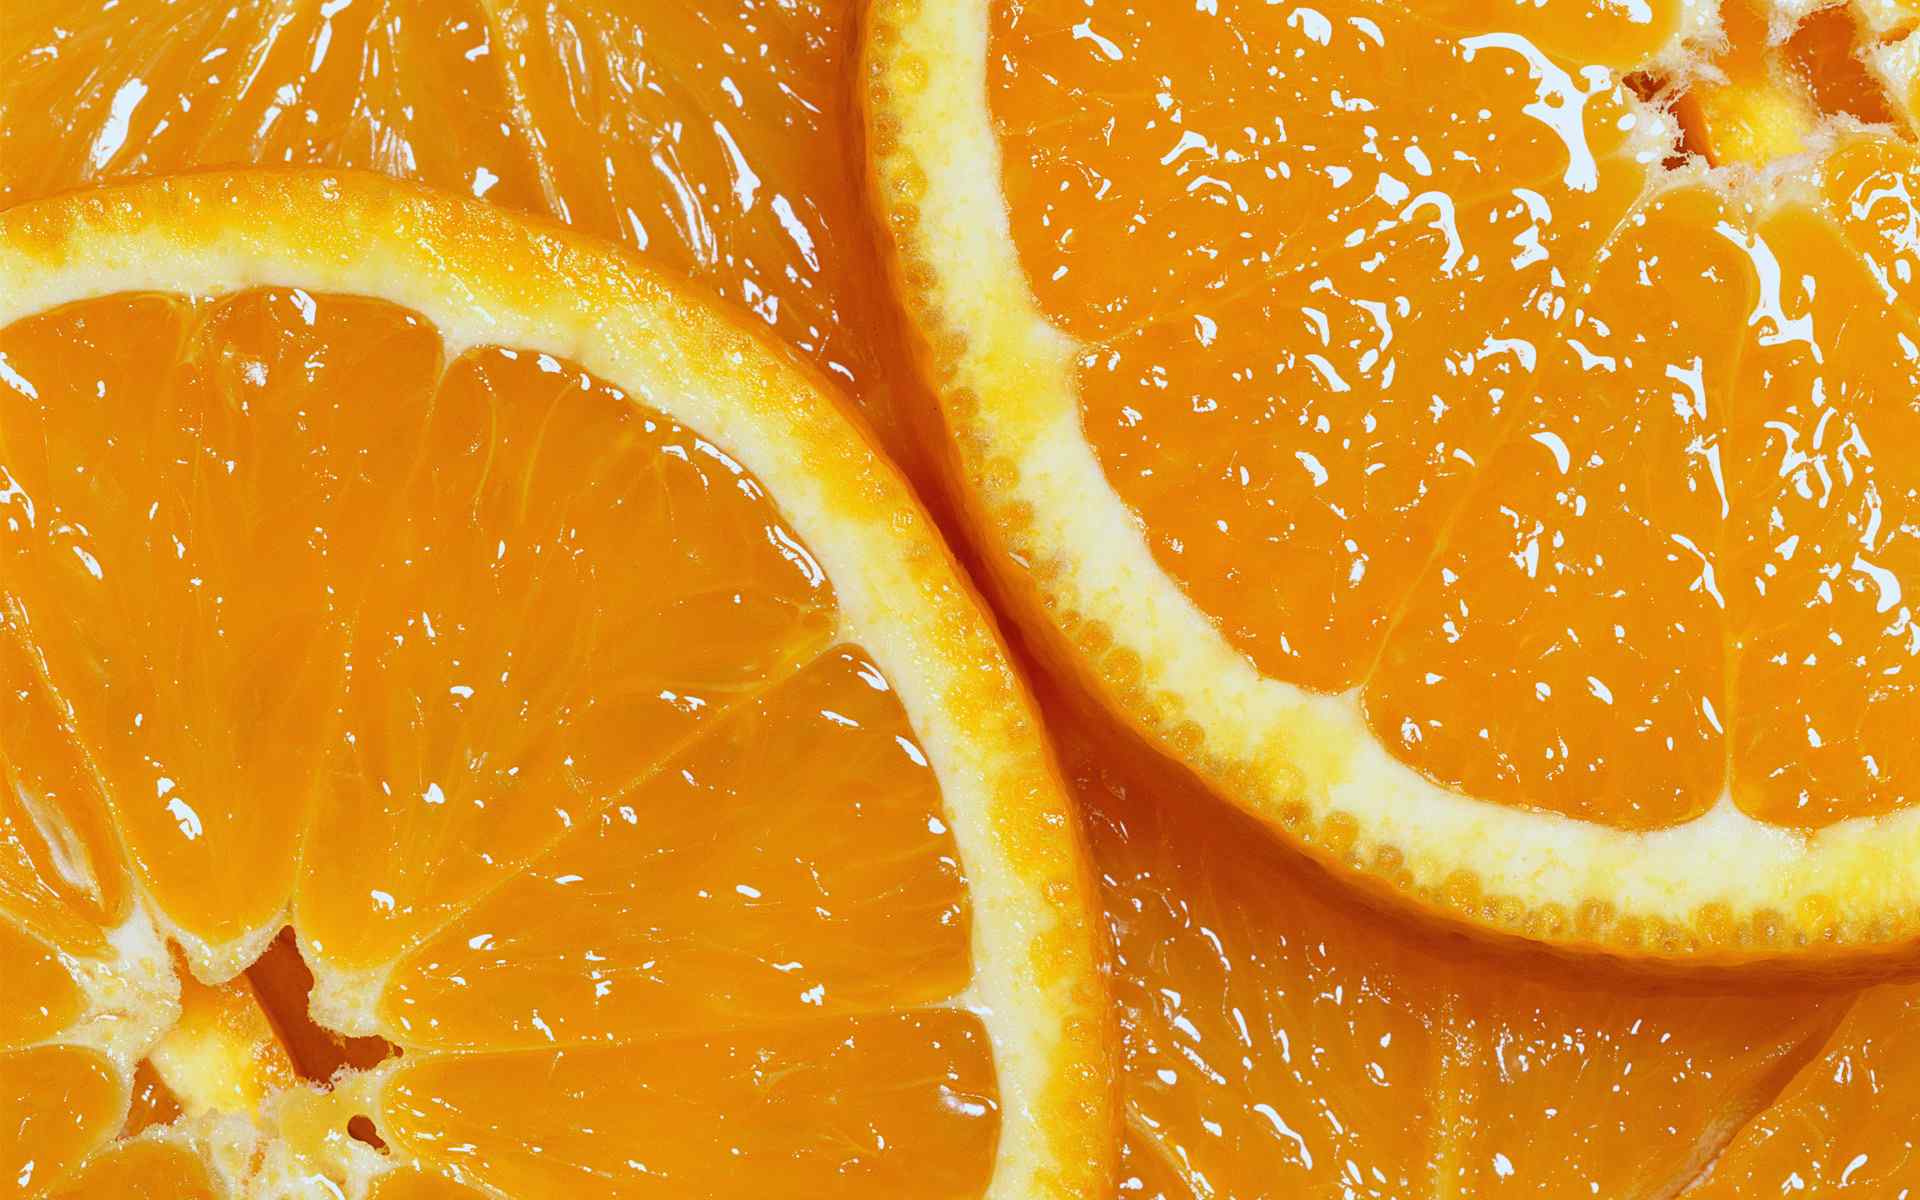 水果高清桌面壁纸之诱人的鲜橙